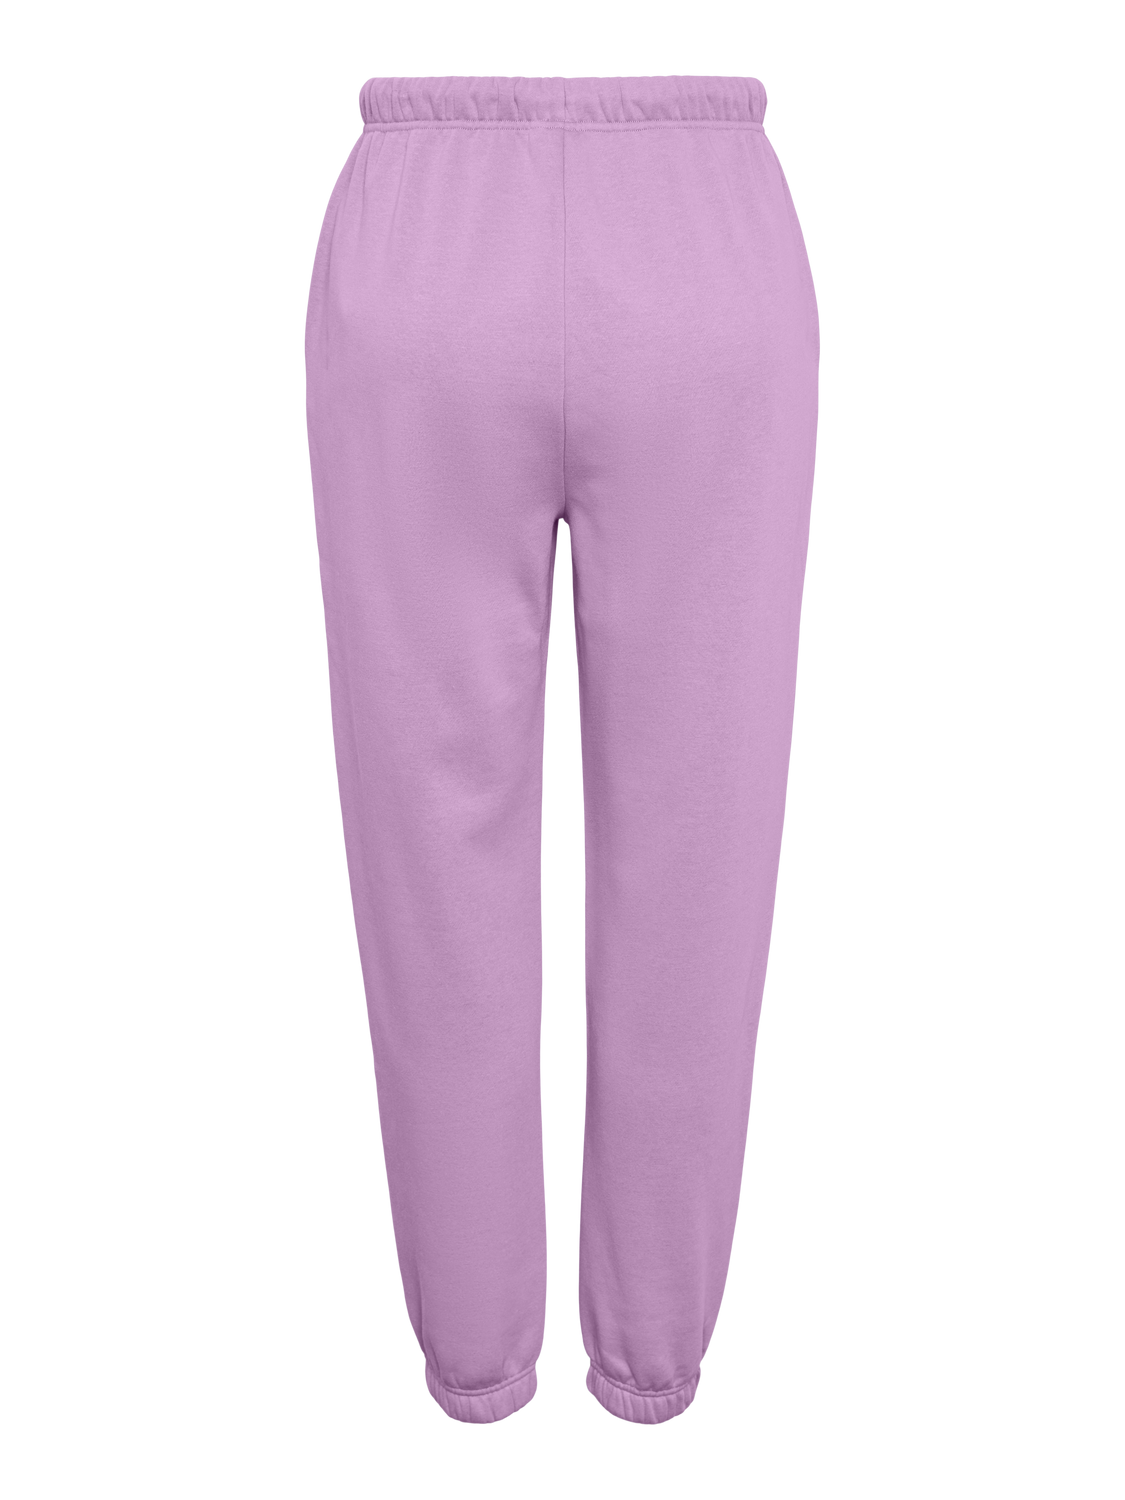 PCCHILLI Pants - Pastel Lavender